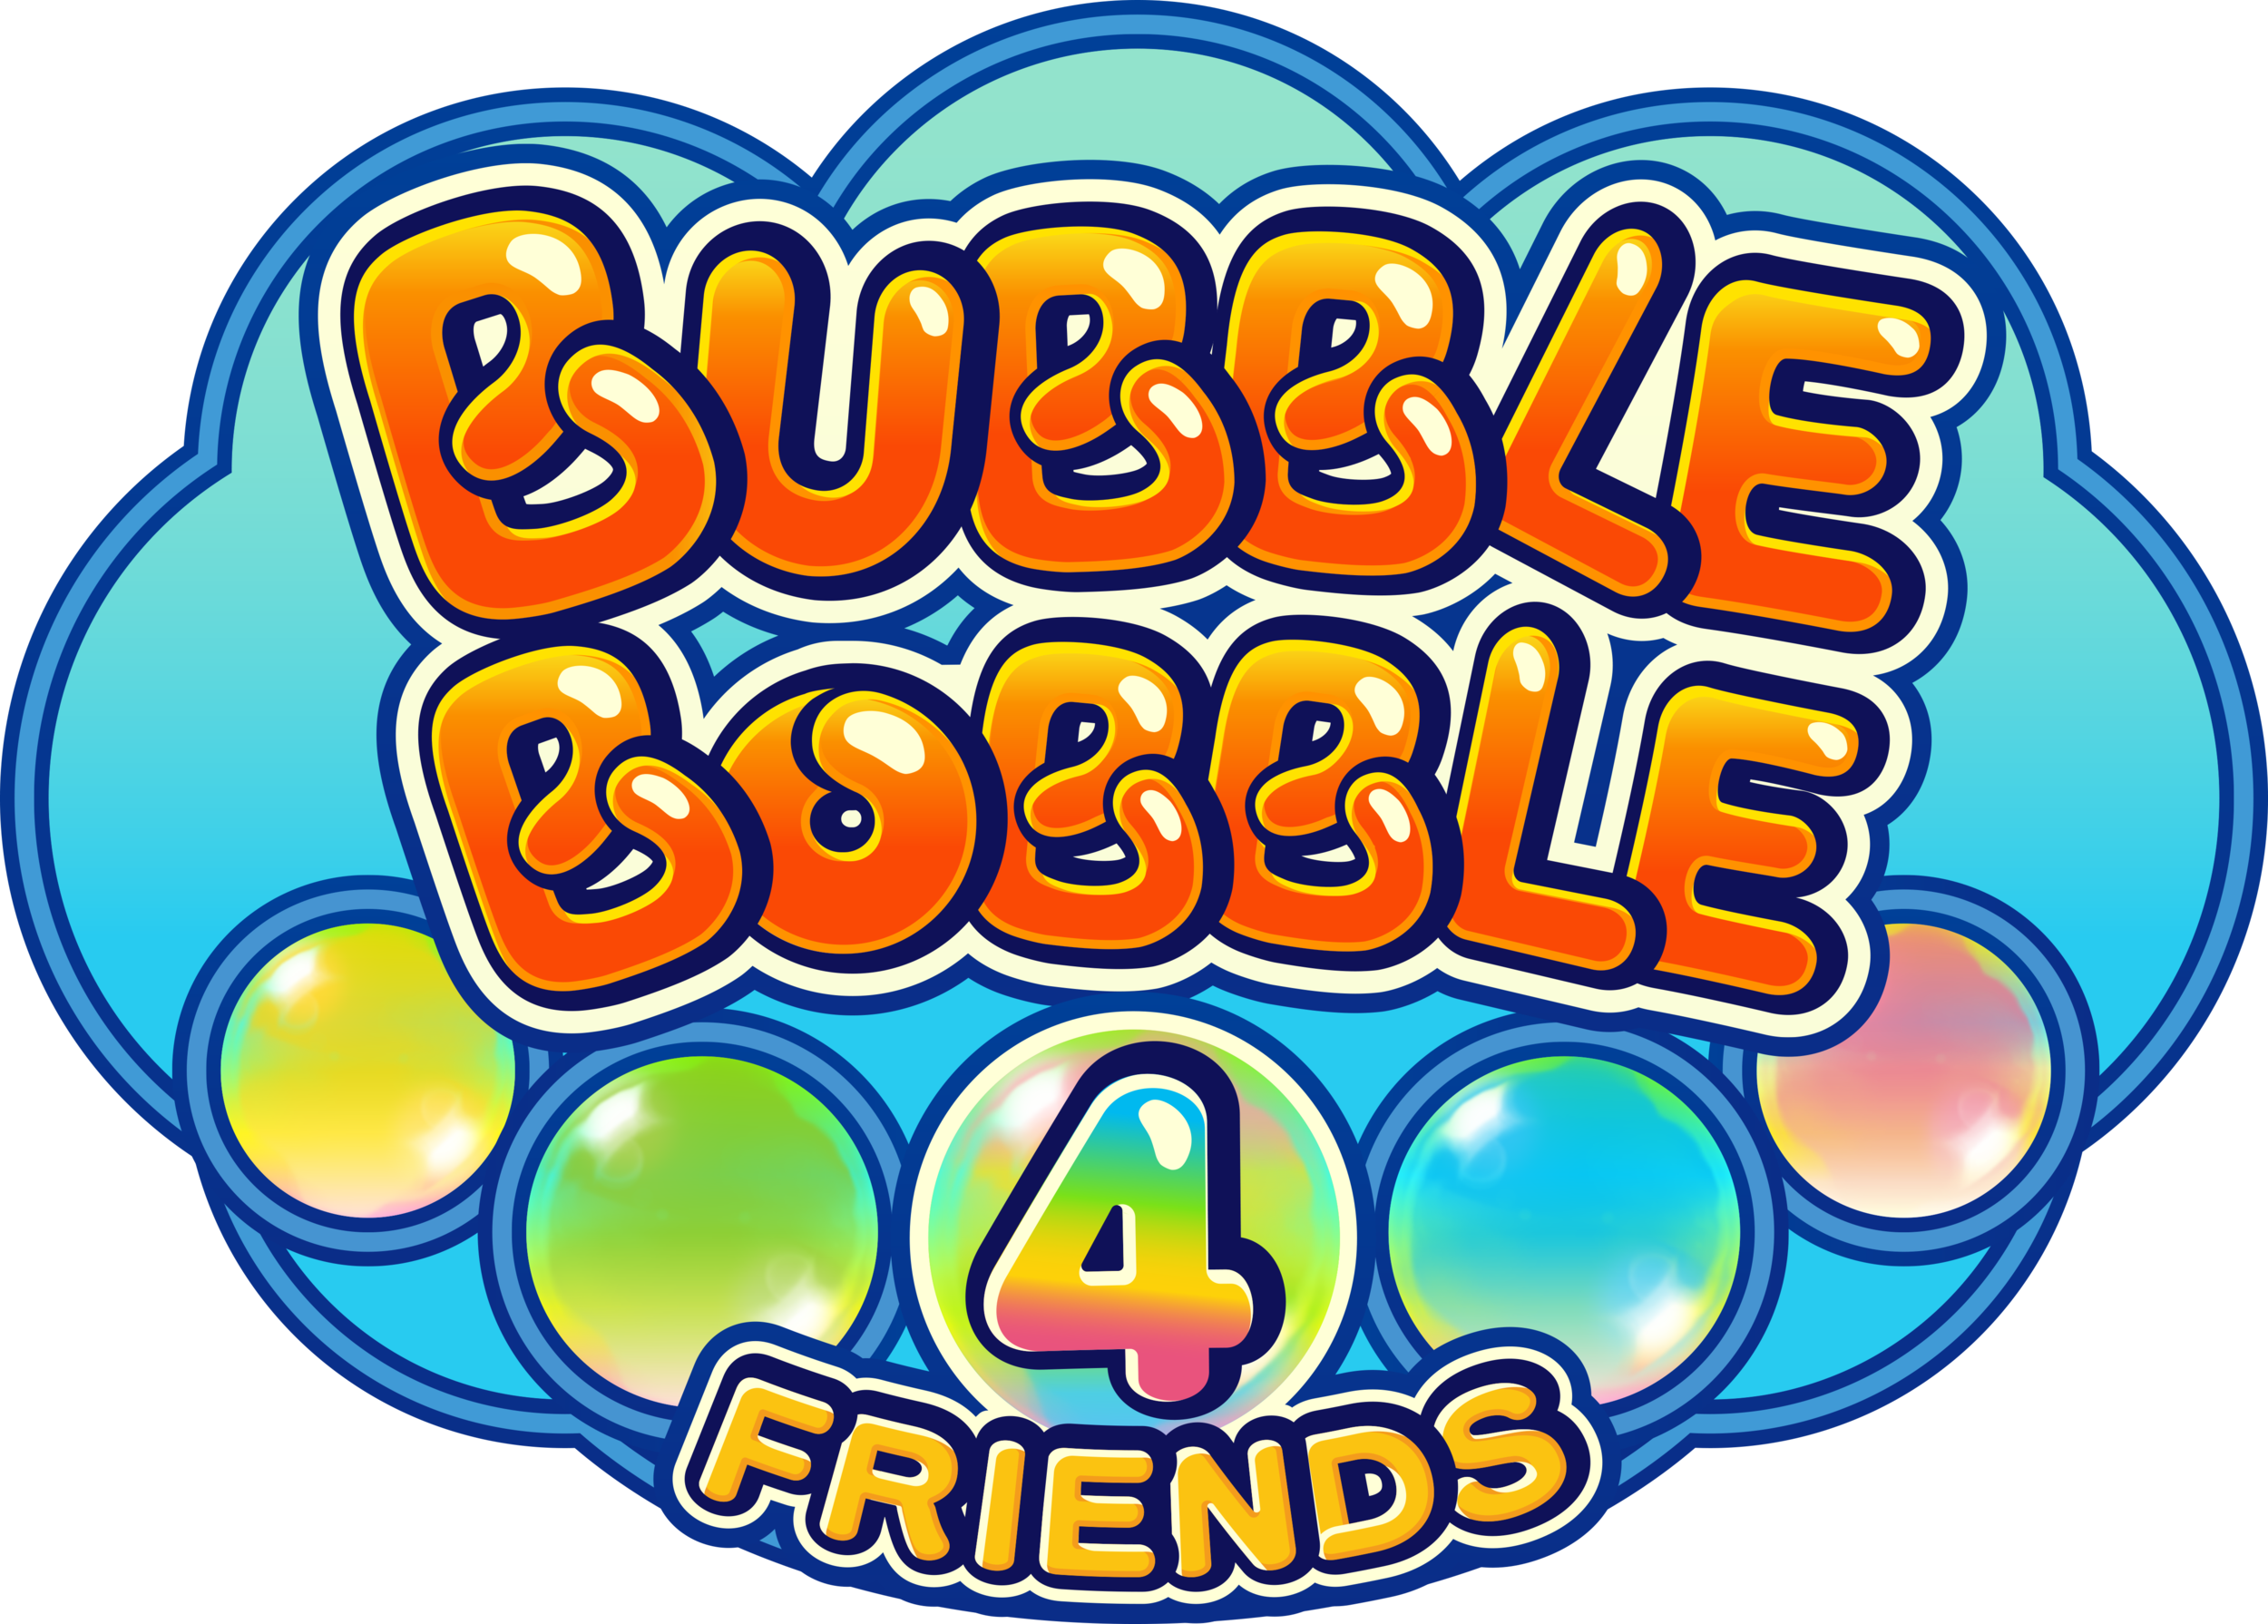 https://images.squarespace-cdn.com/content/v1/58352a4415d5db57b18c149e/1585241140984-2XUIHZA7EL9X0PKAJBRI/Bubble+Bobble+4+Friends+Logo.png